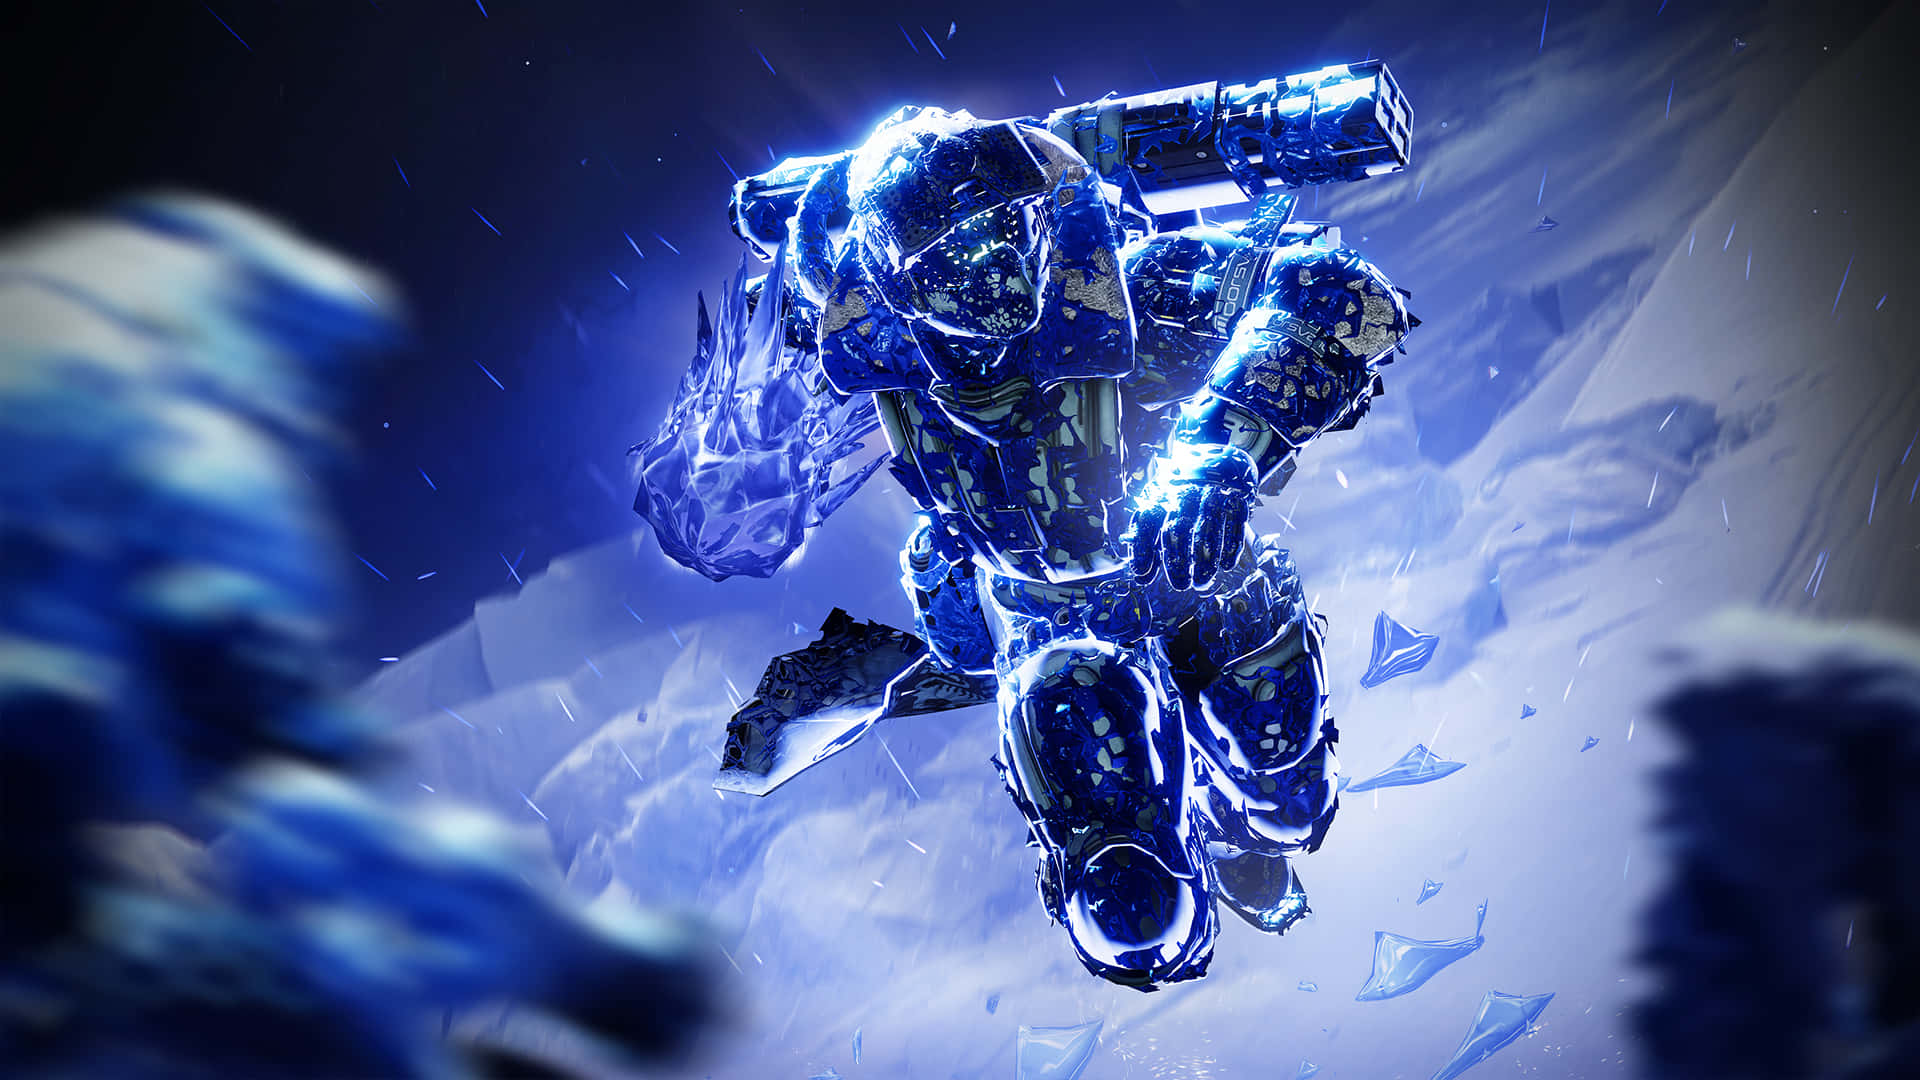 A Titan hero in fierce battle in the videogame Destiny 2 Wallpaper